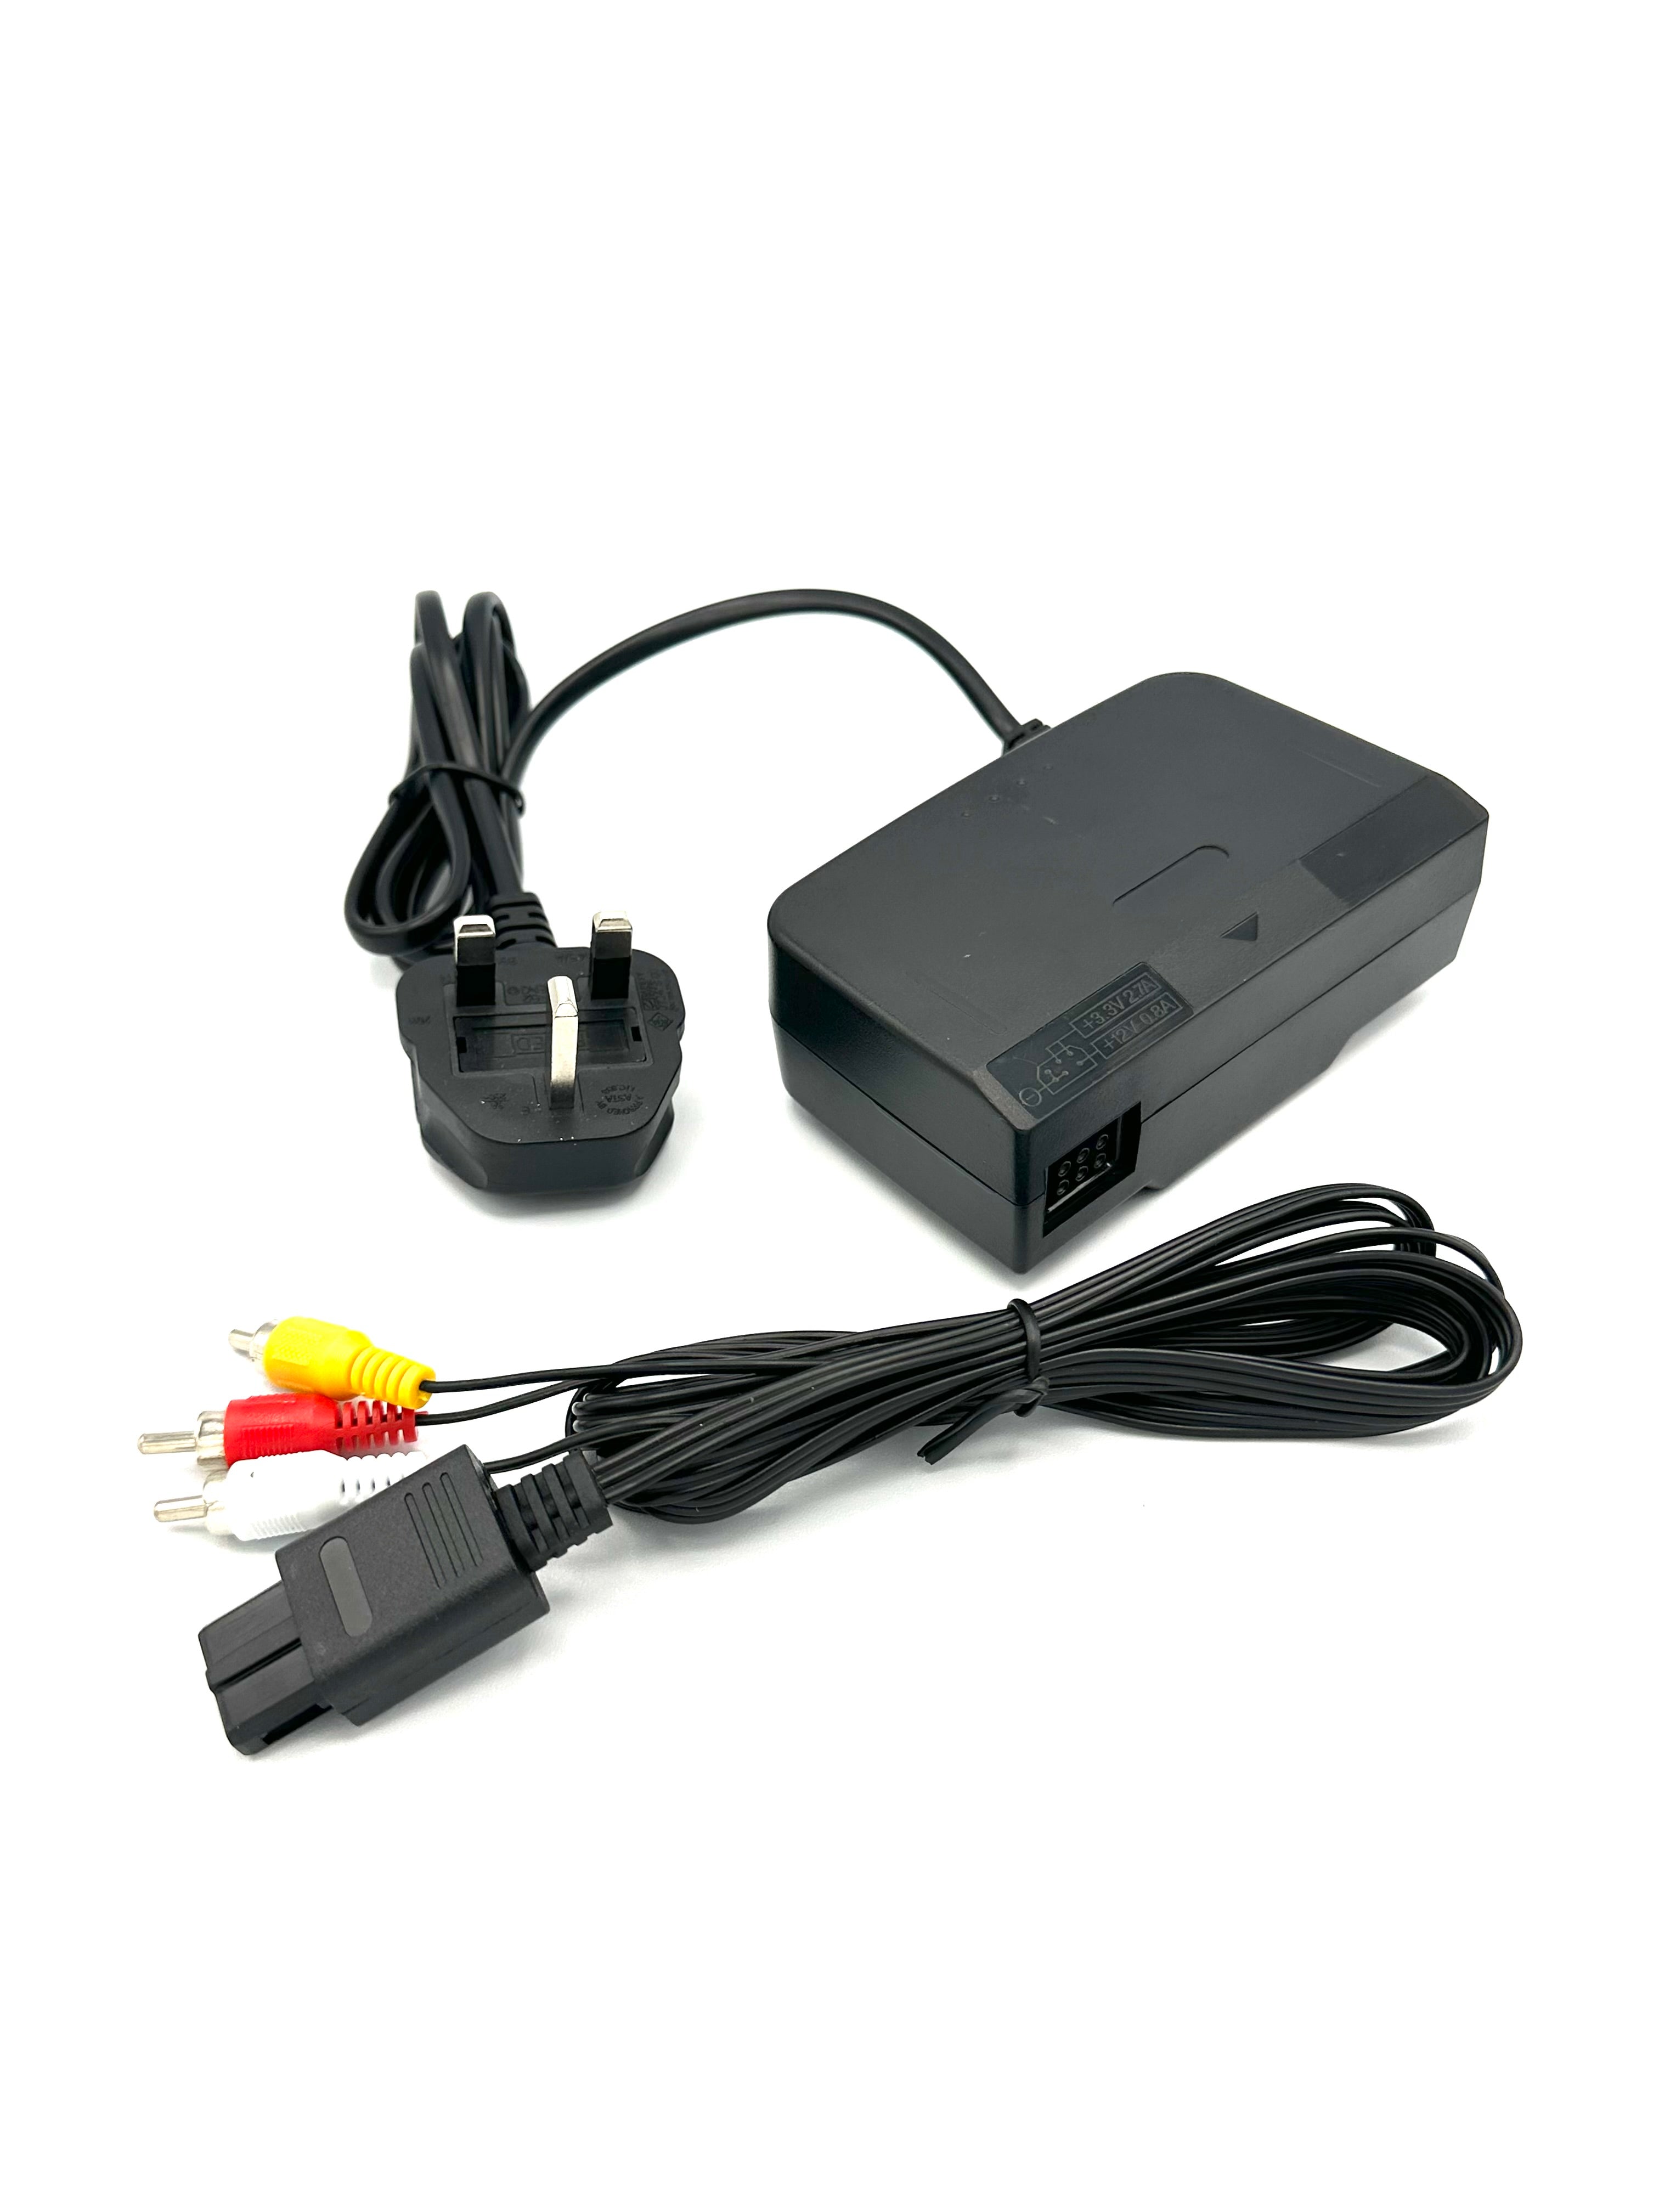 Nintendo 64 Power Supply Adapter & AV Cable